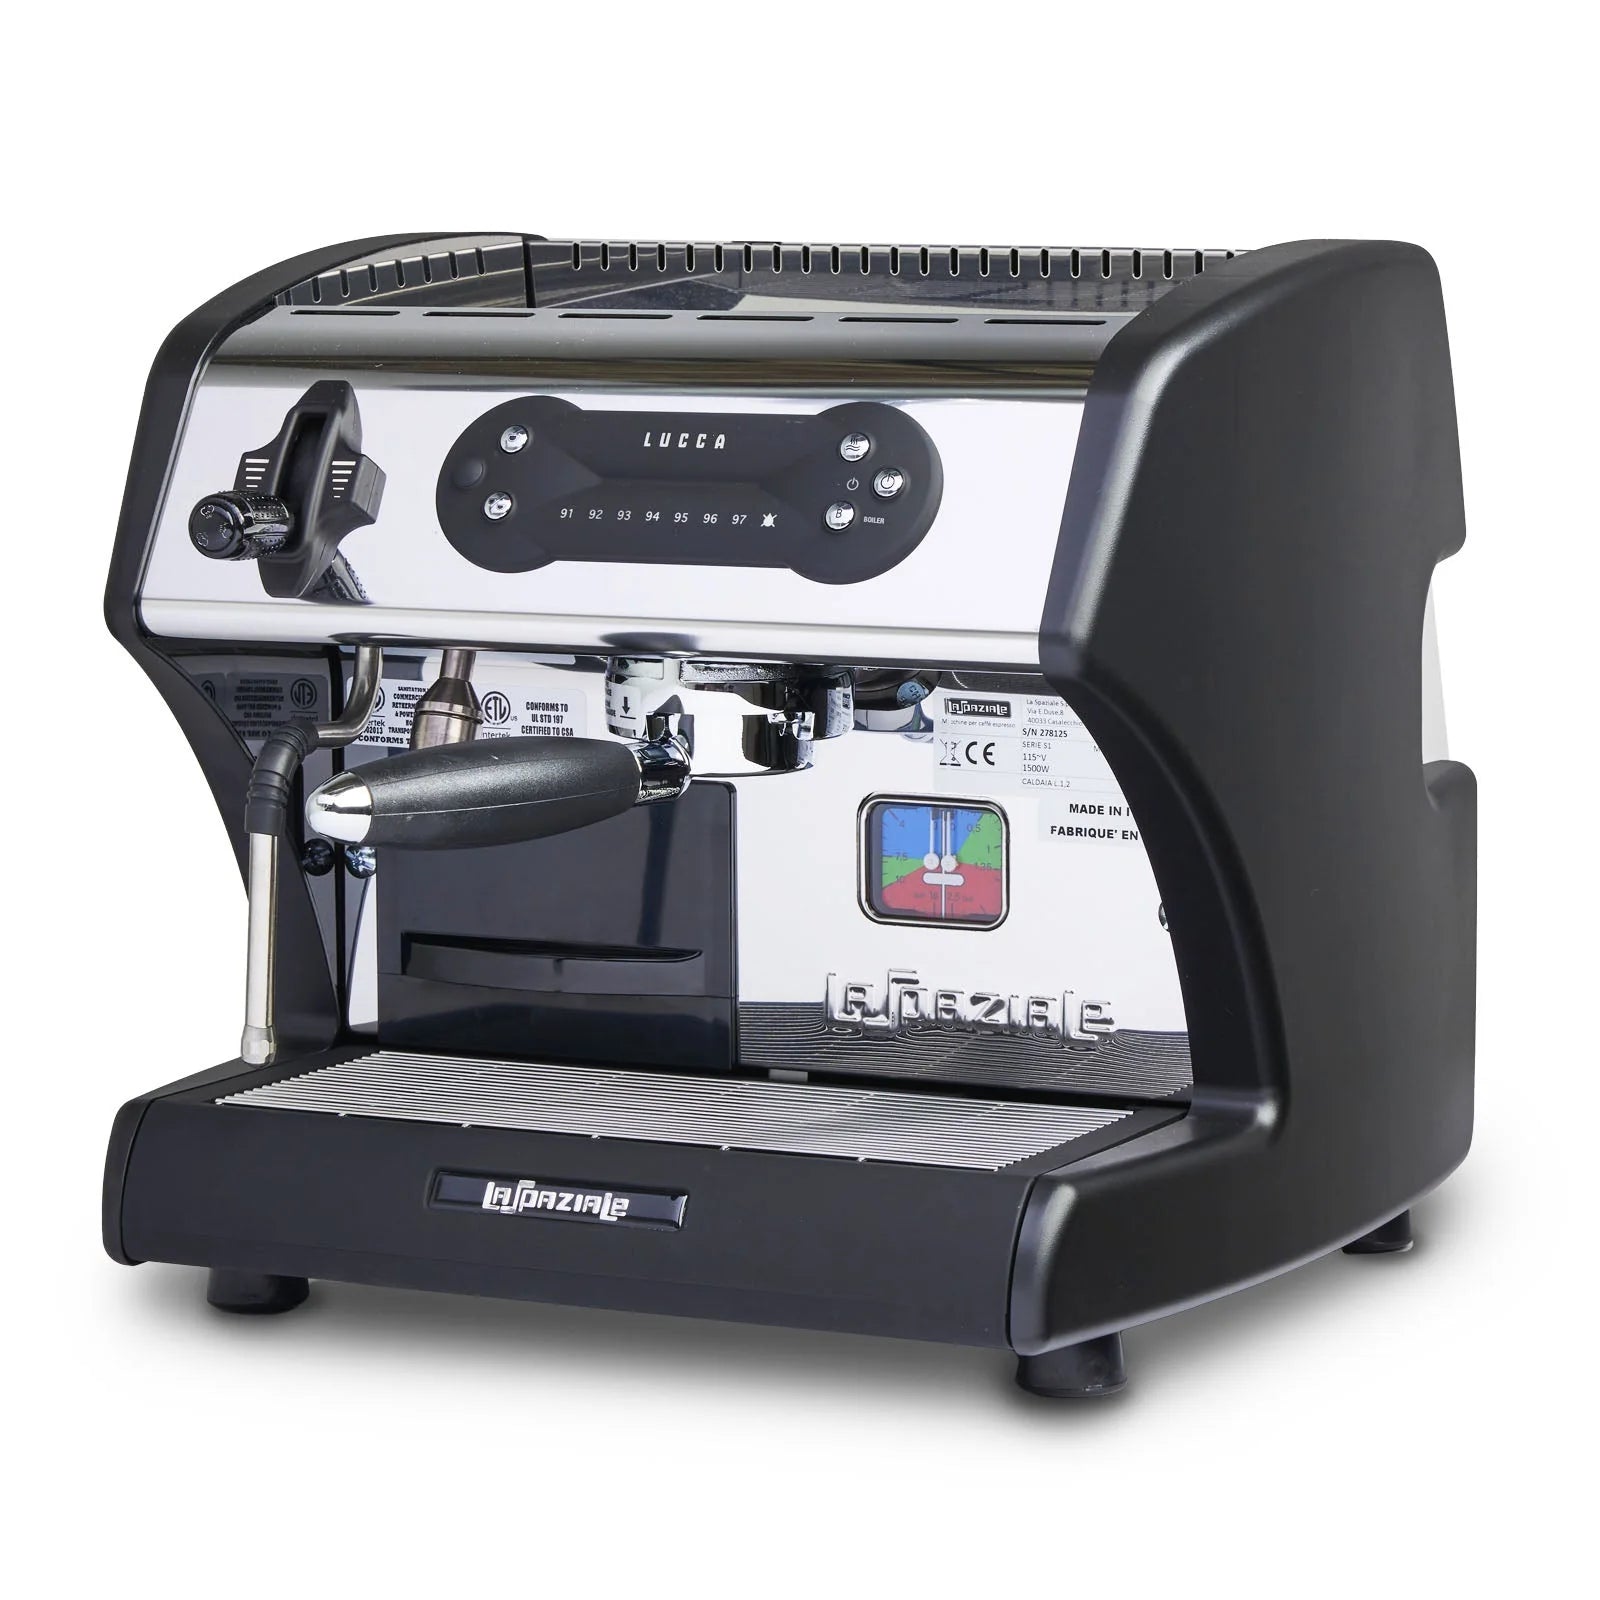 Lucca M58 Espresso Machine, Black